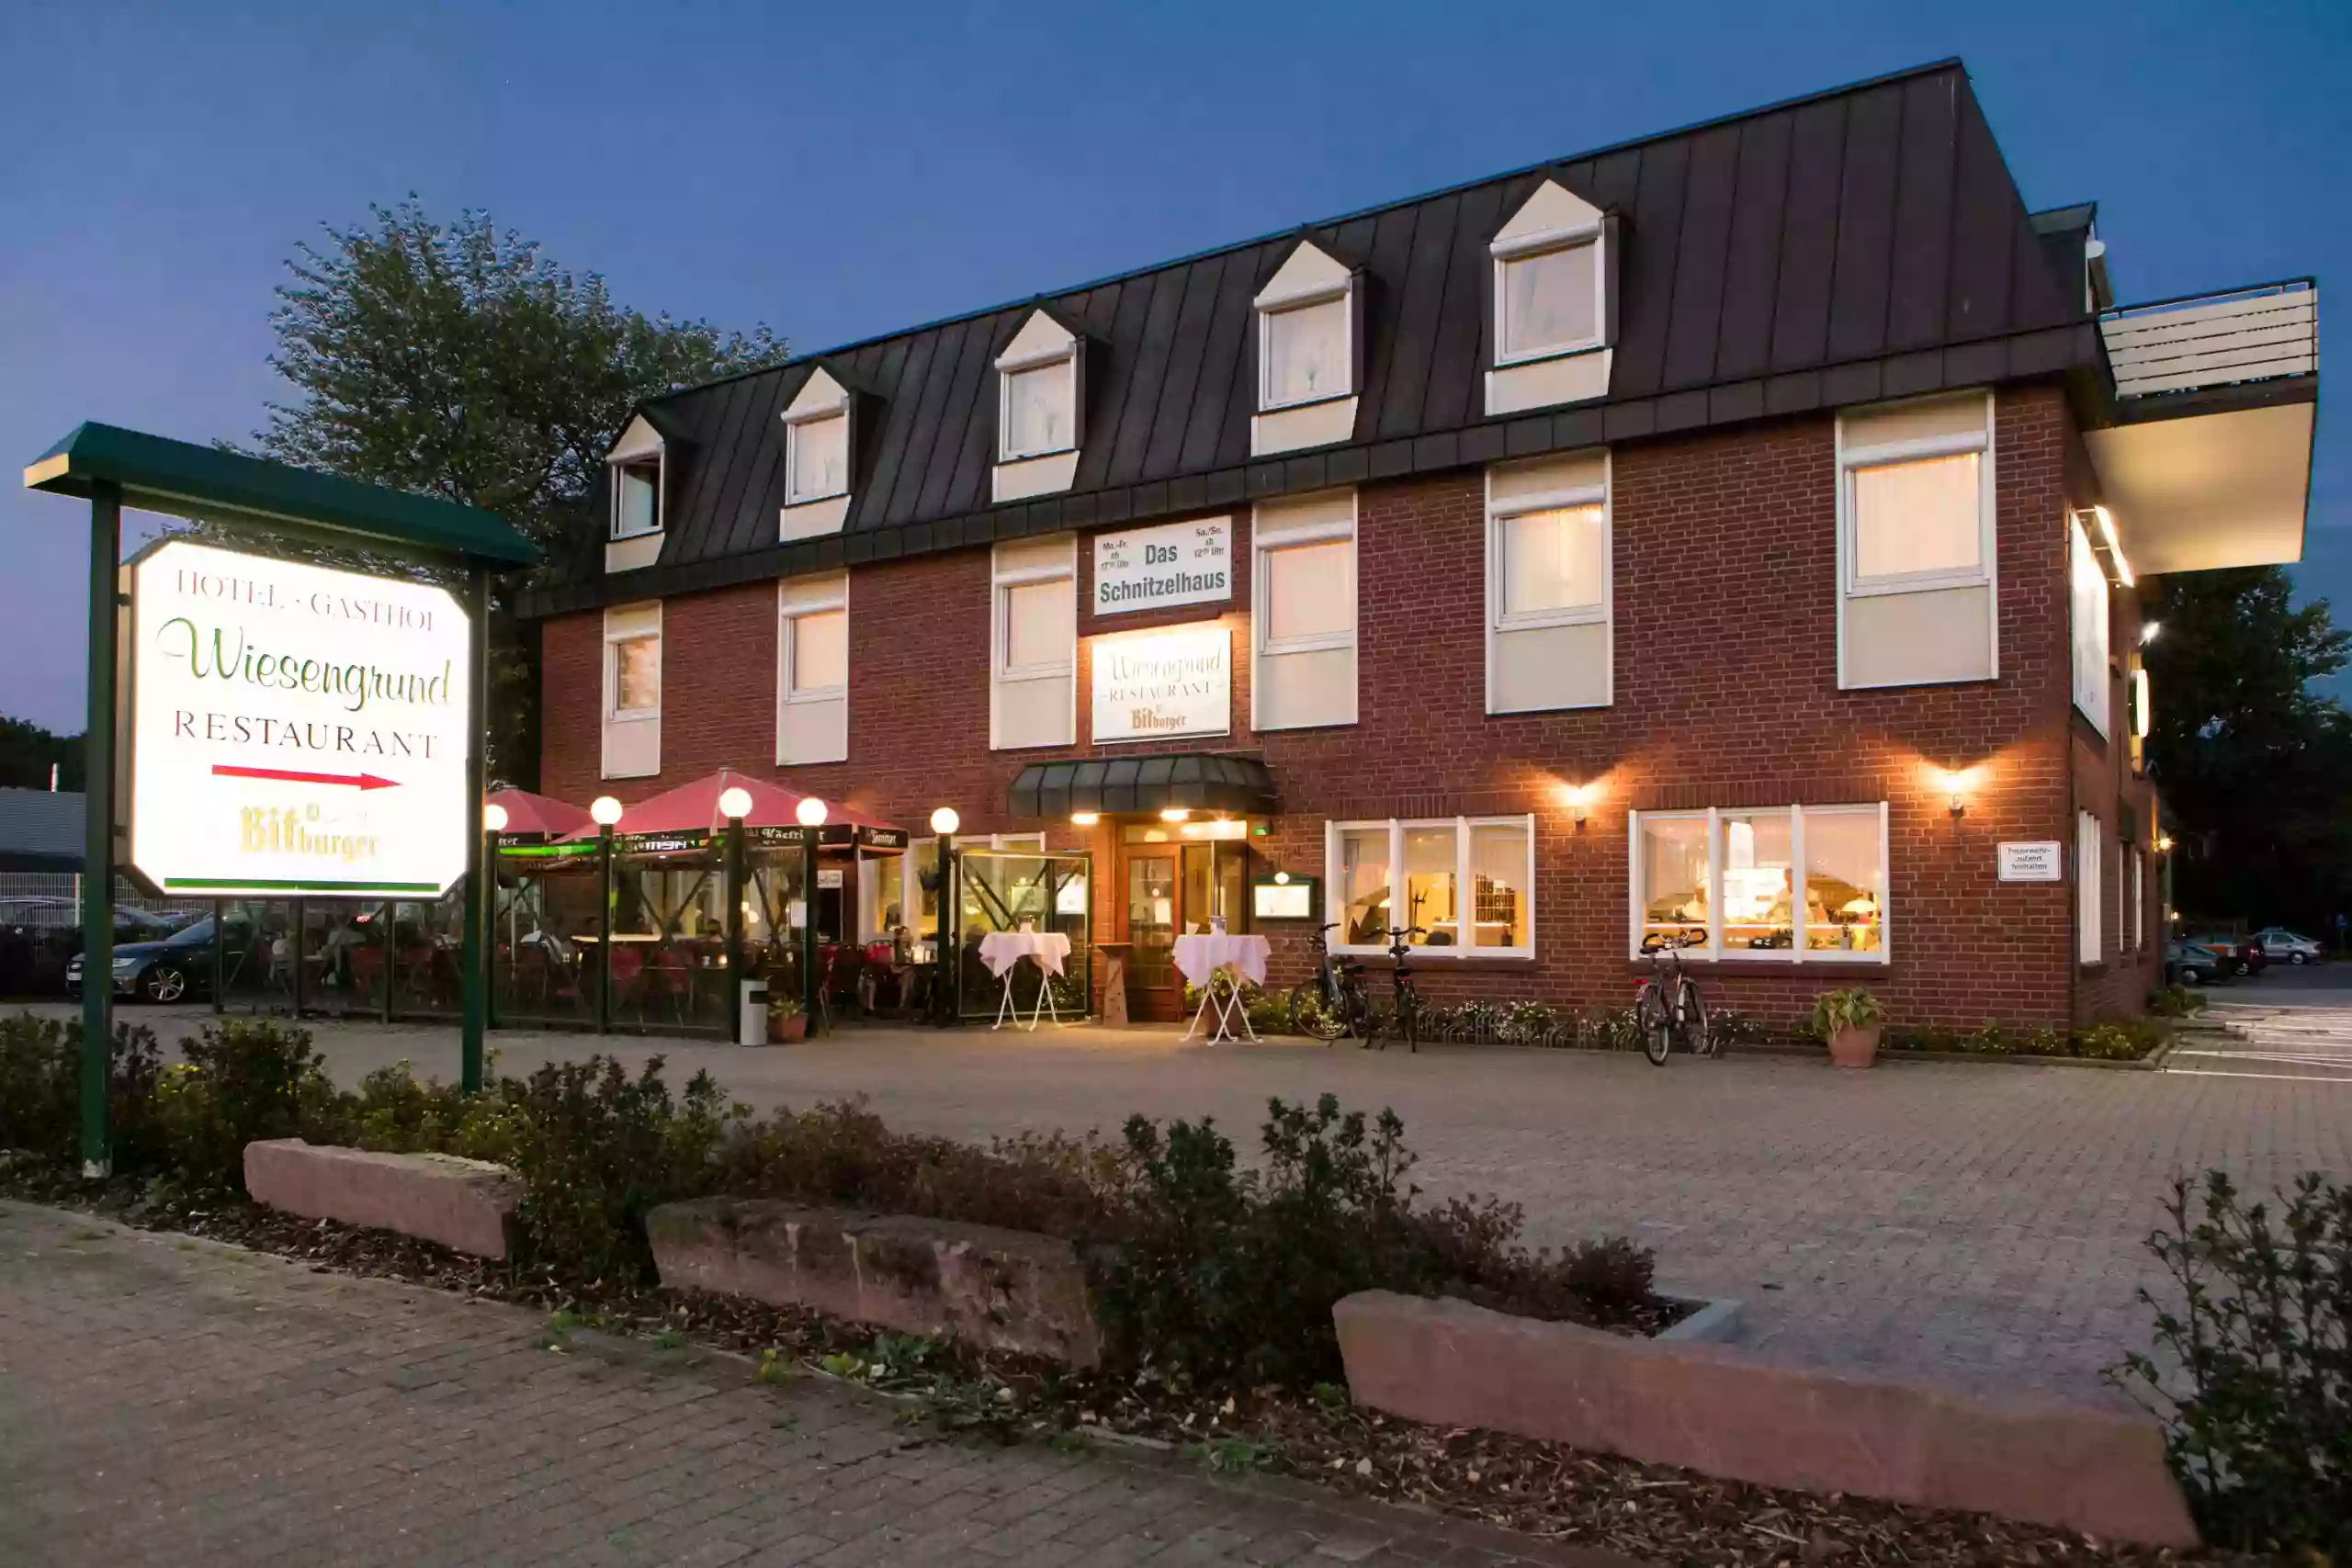 Hotel & Restaurant zum Wiesengrund - Das Schnitzelhaus